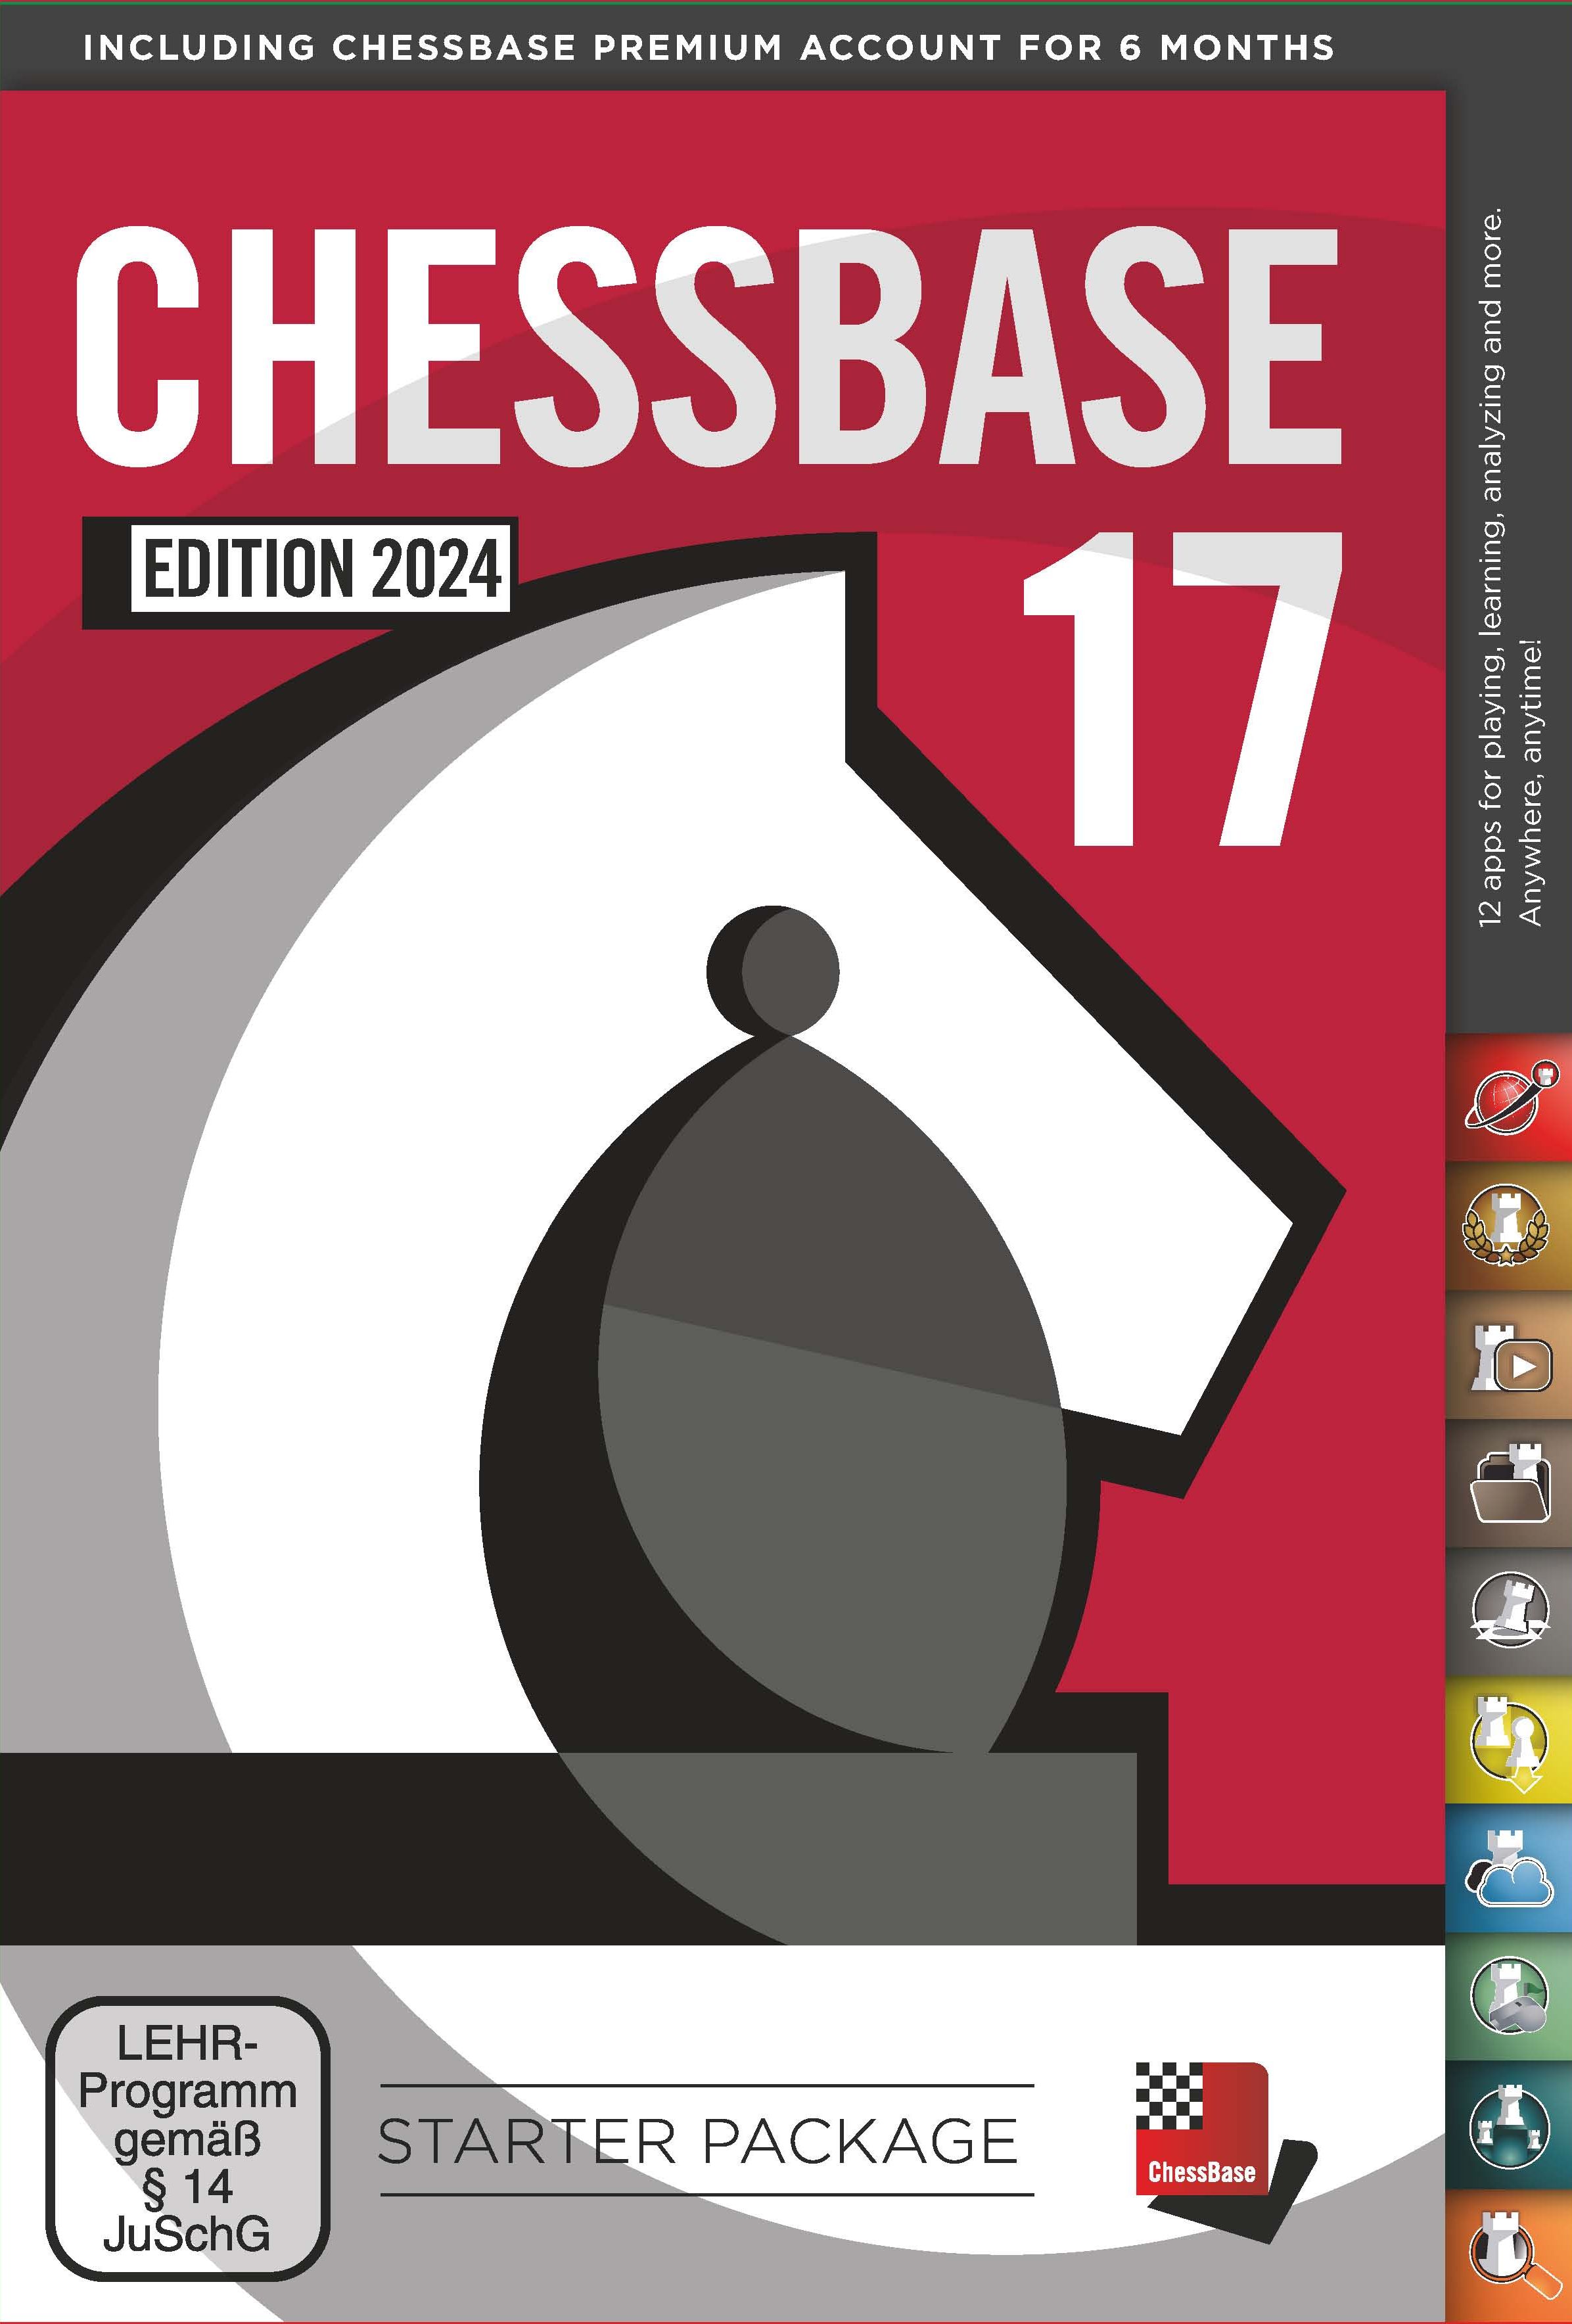 ChessBase 17 Startpaket - Editon 2024